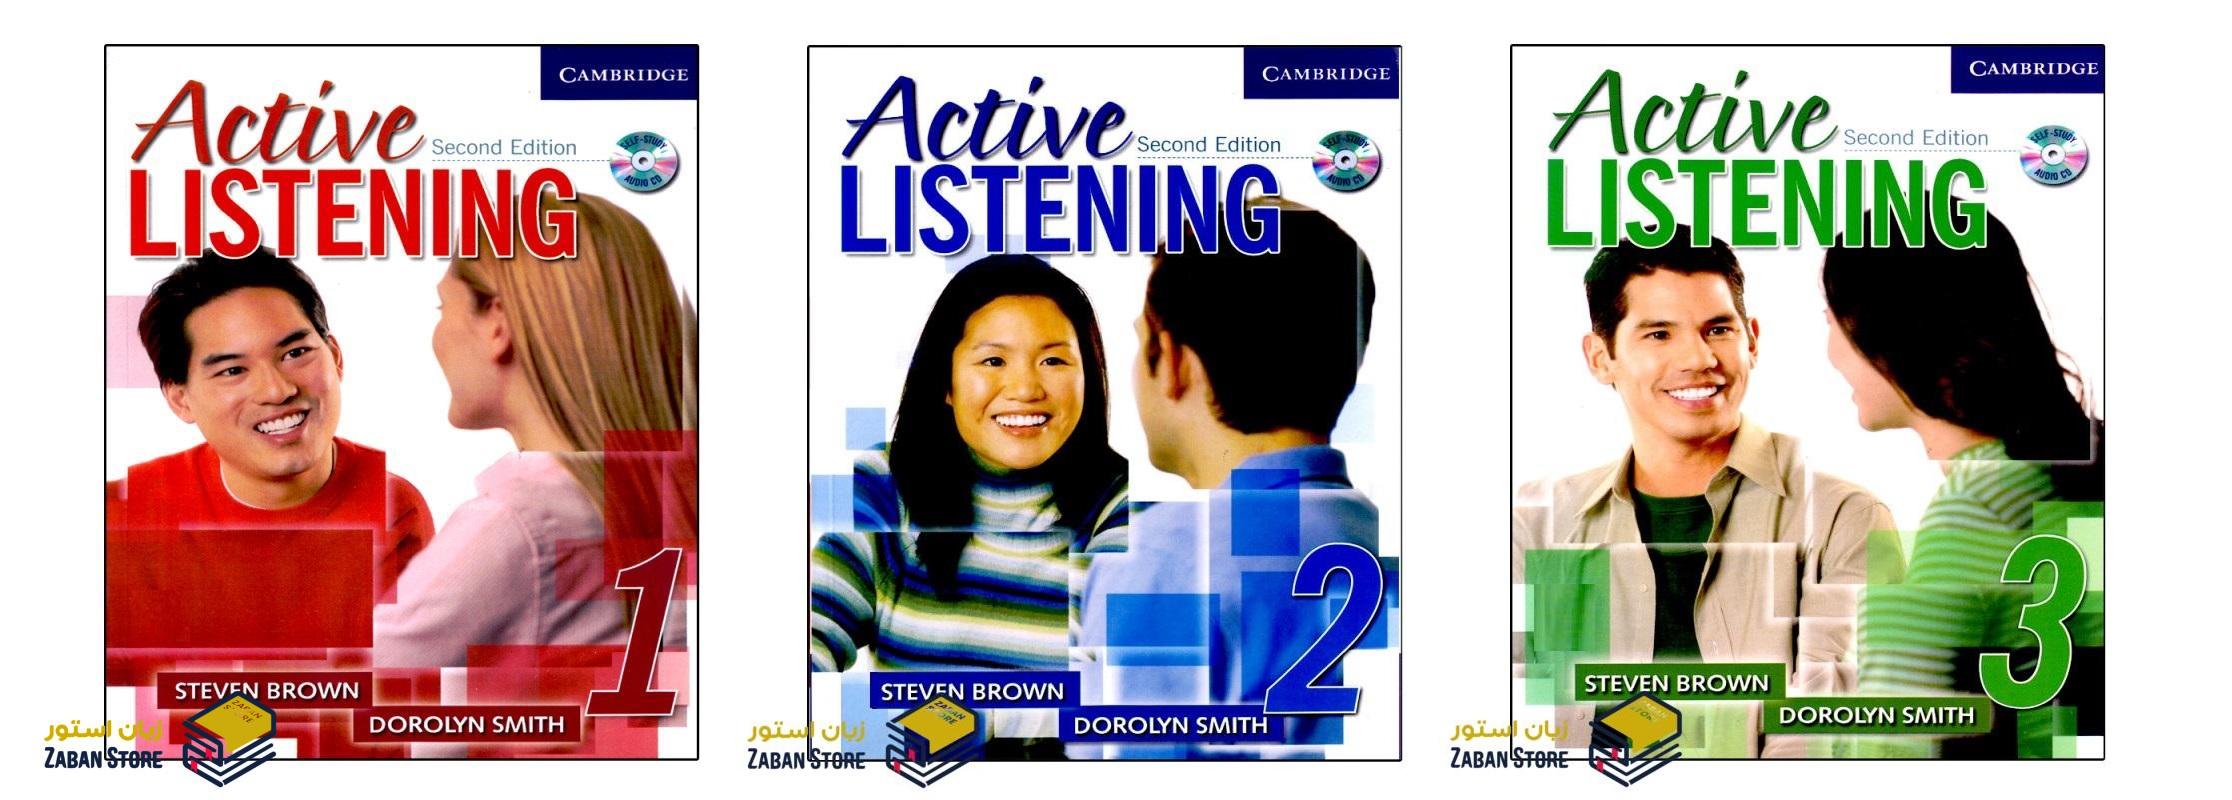 خرید کتاب زبان | کتاب زبان اصلی | Active Listening 1 Second Edition | کتاب اکتیو لیسنینگ یک ویرایش دوم